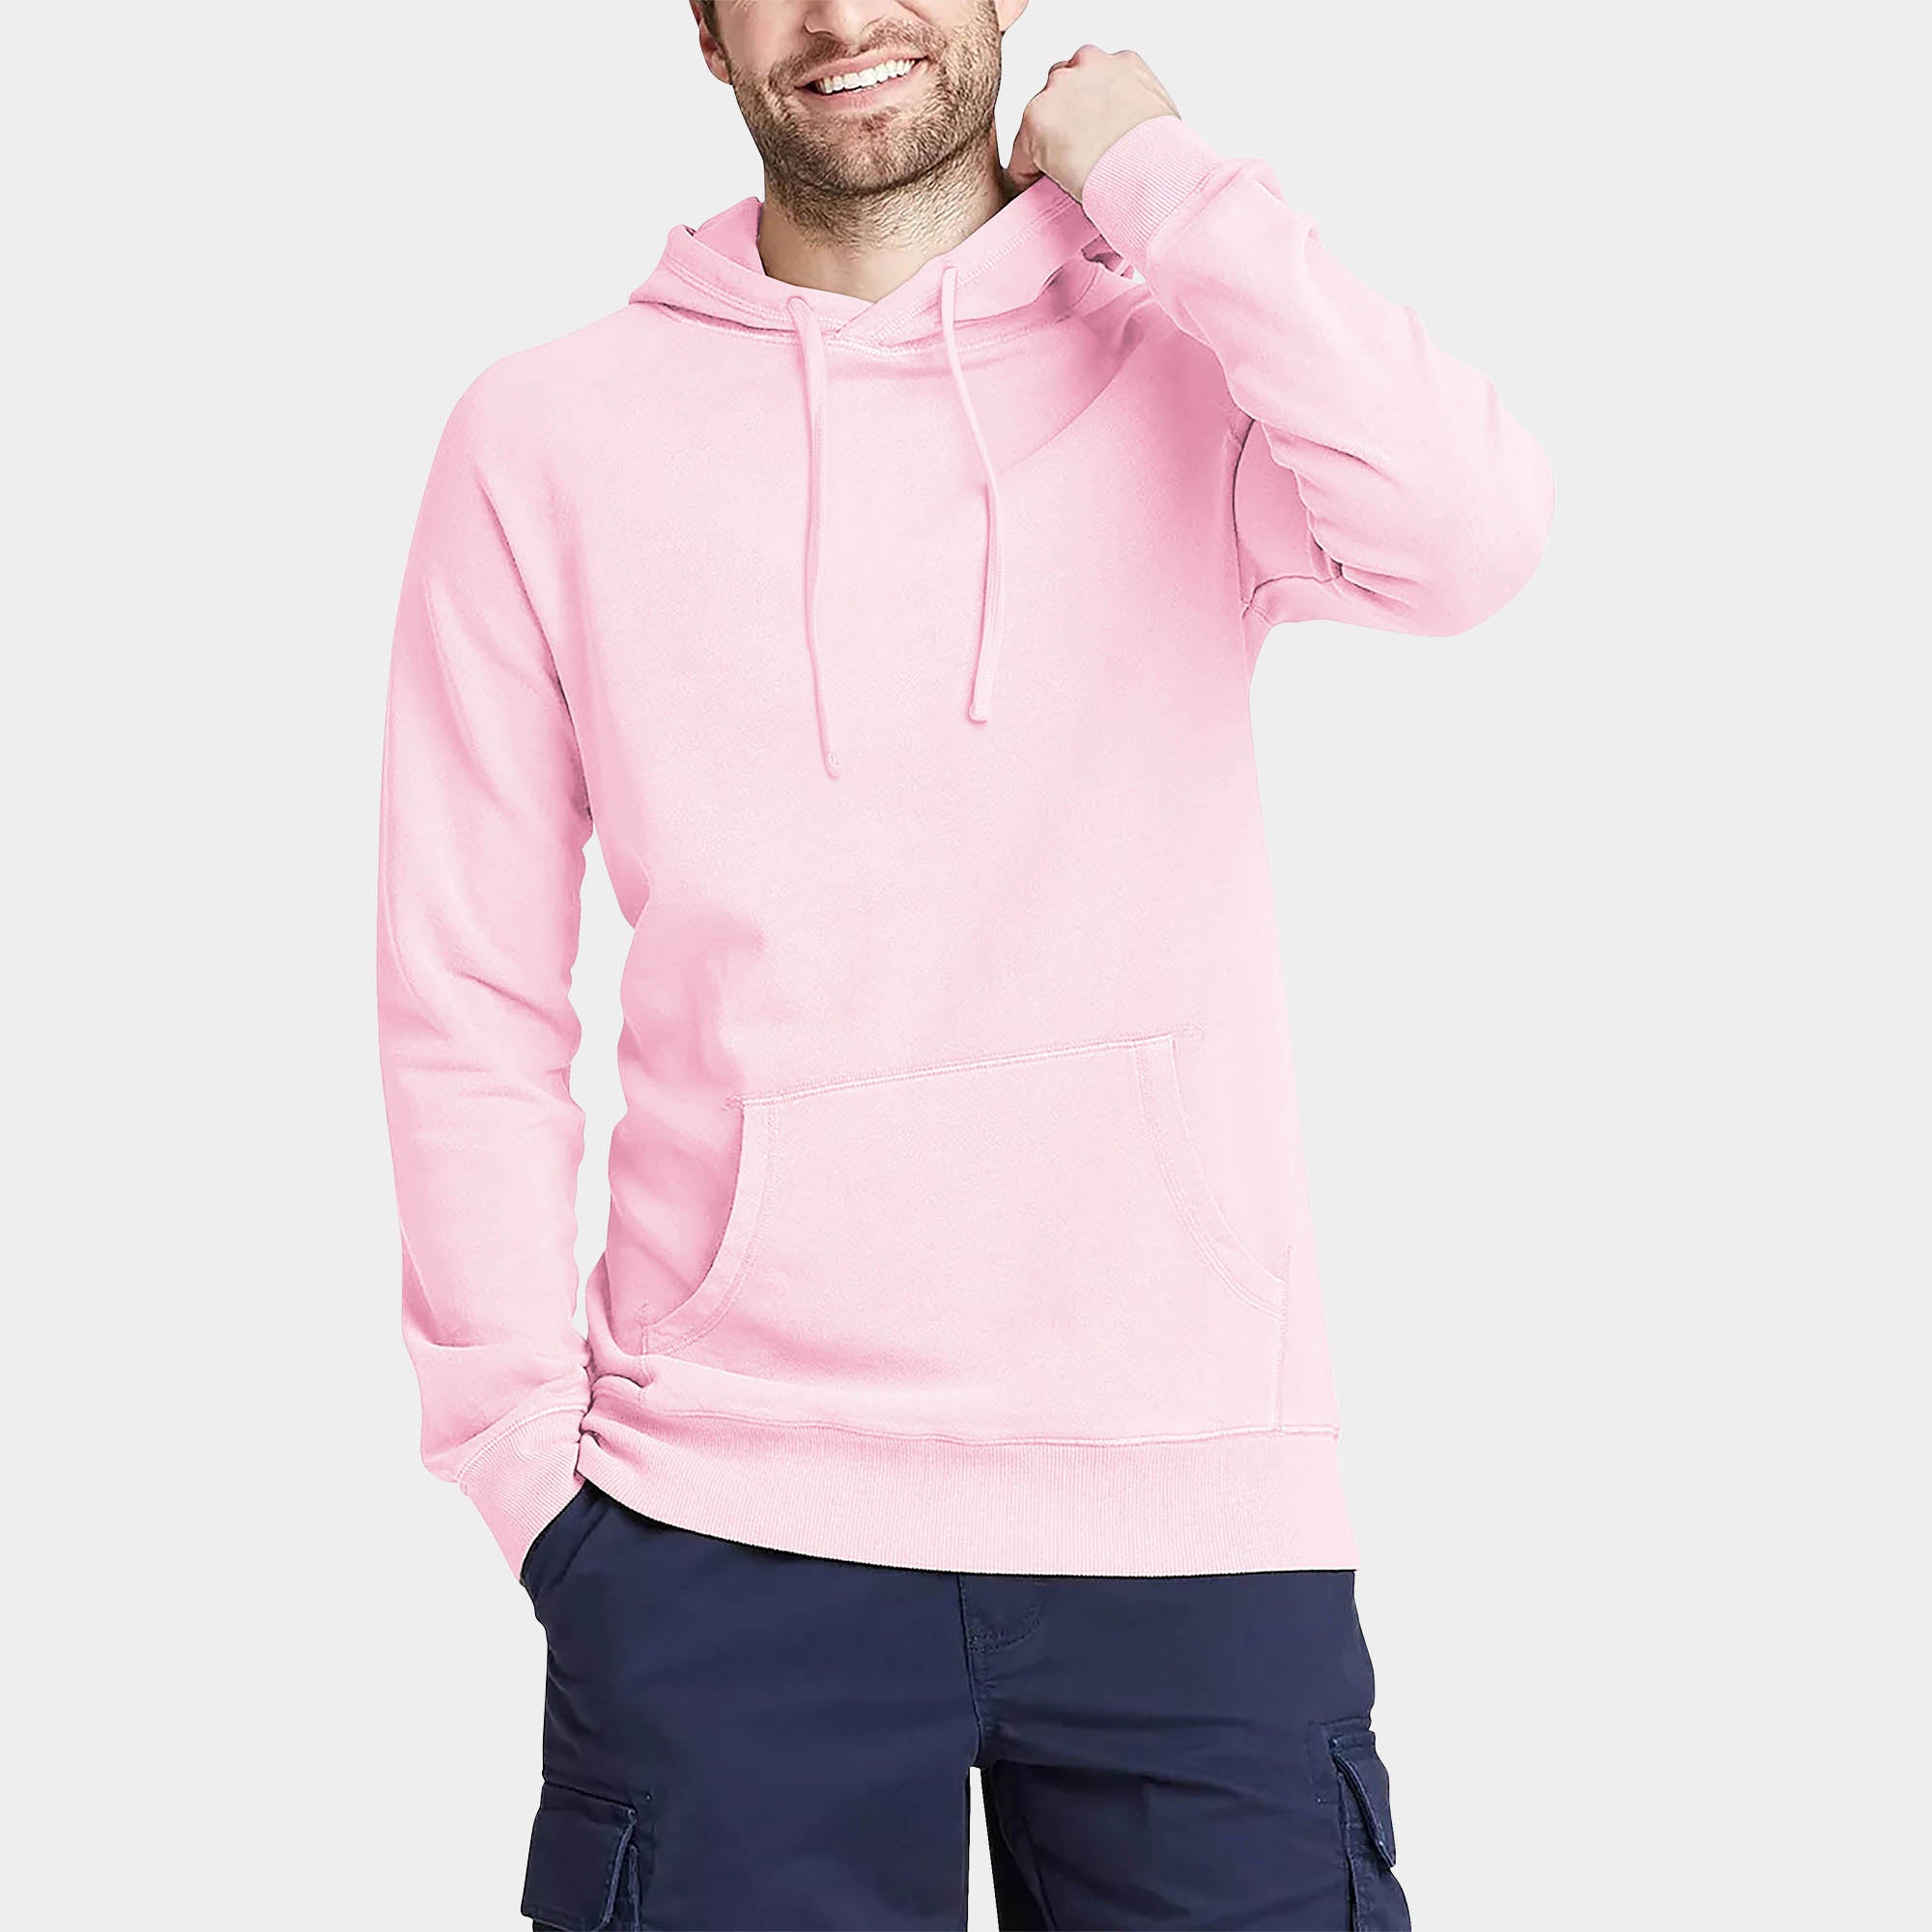 hoodie_hoodies for men_hooded sweatshirt_custom hoodies_cheap hoodies_couple hoodies_pullover hoodie_mens pullover hoodie_Pink